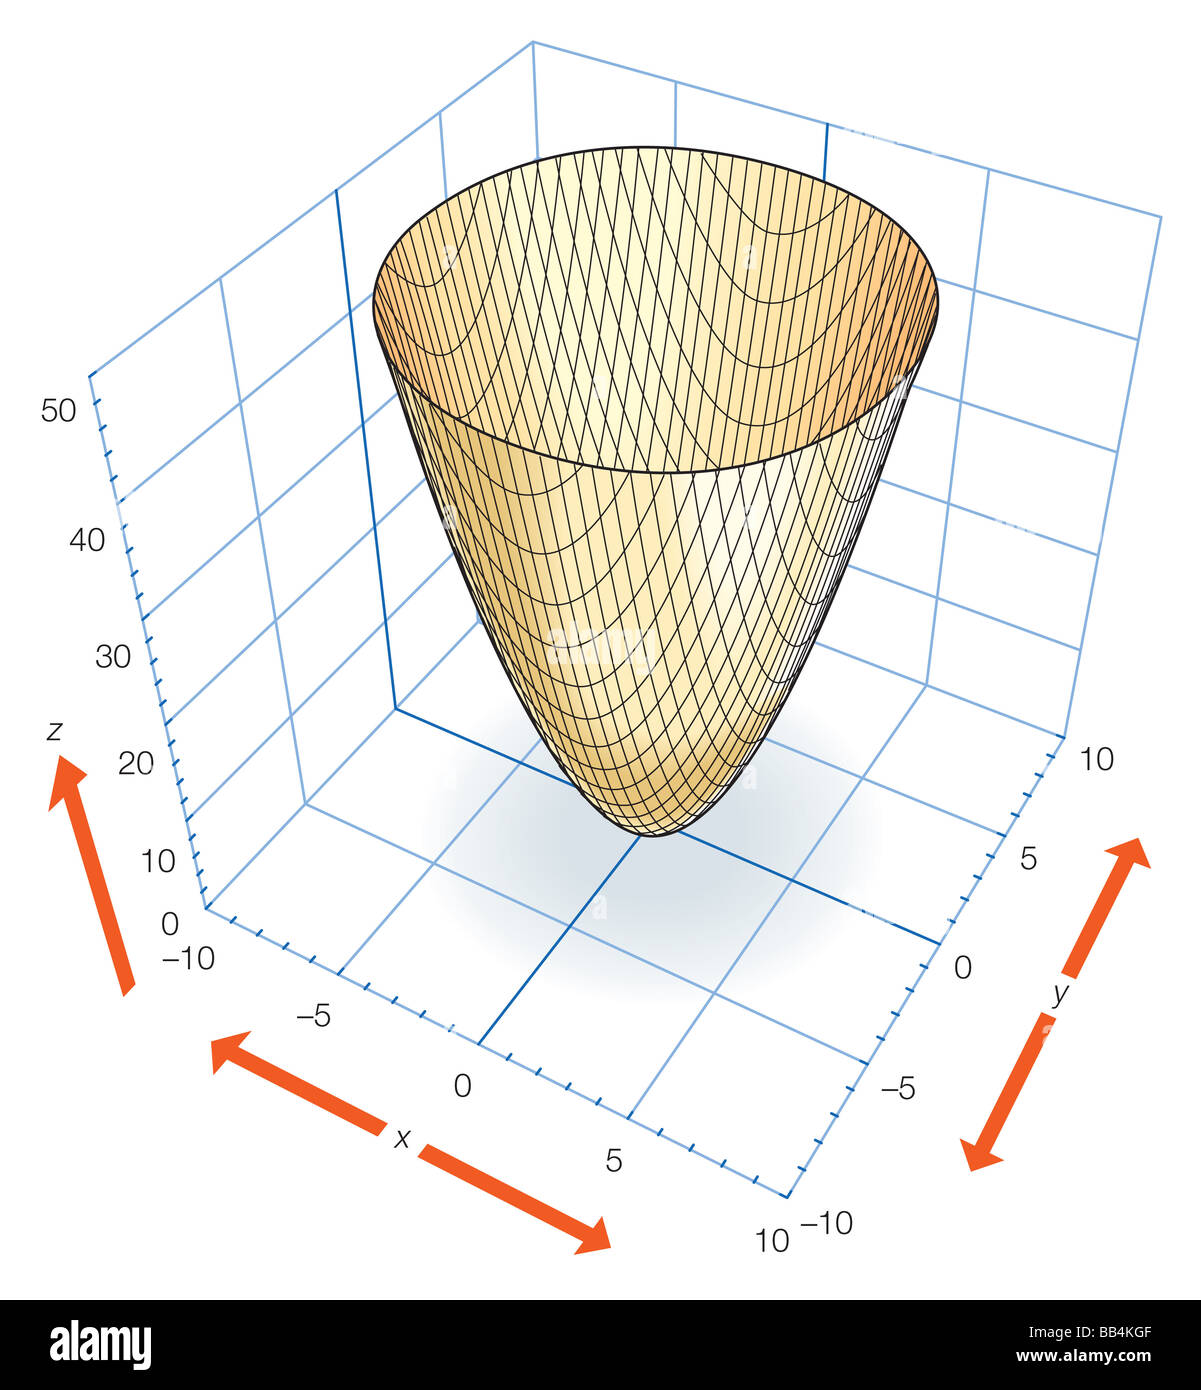 Parte De La Eliptica Paraboloide Z X2 Y2 Que Pueden Ser Generados Por La Rotacion De La Parabola Z X2 O Z Y2 Sobre El Eje Z Fotografia De Stock Alamy